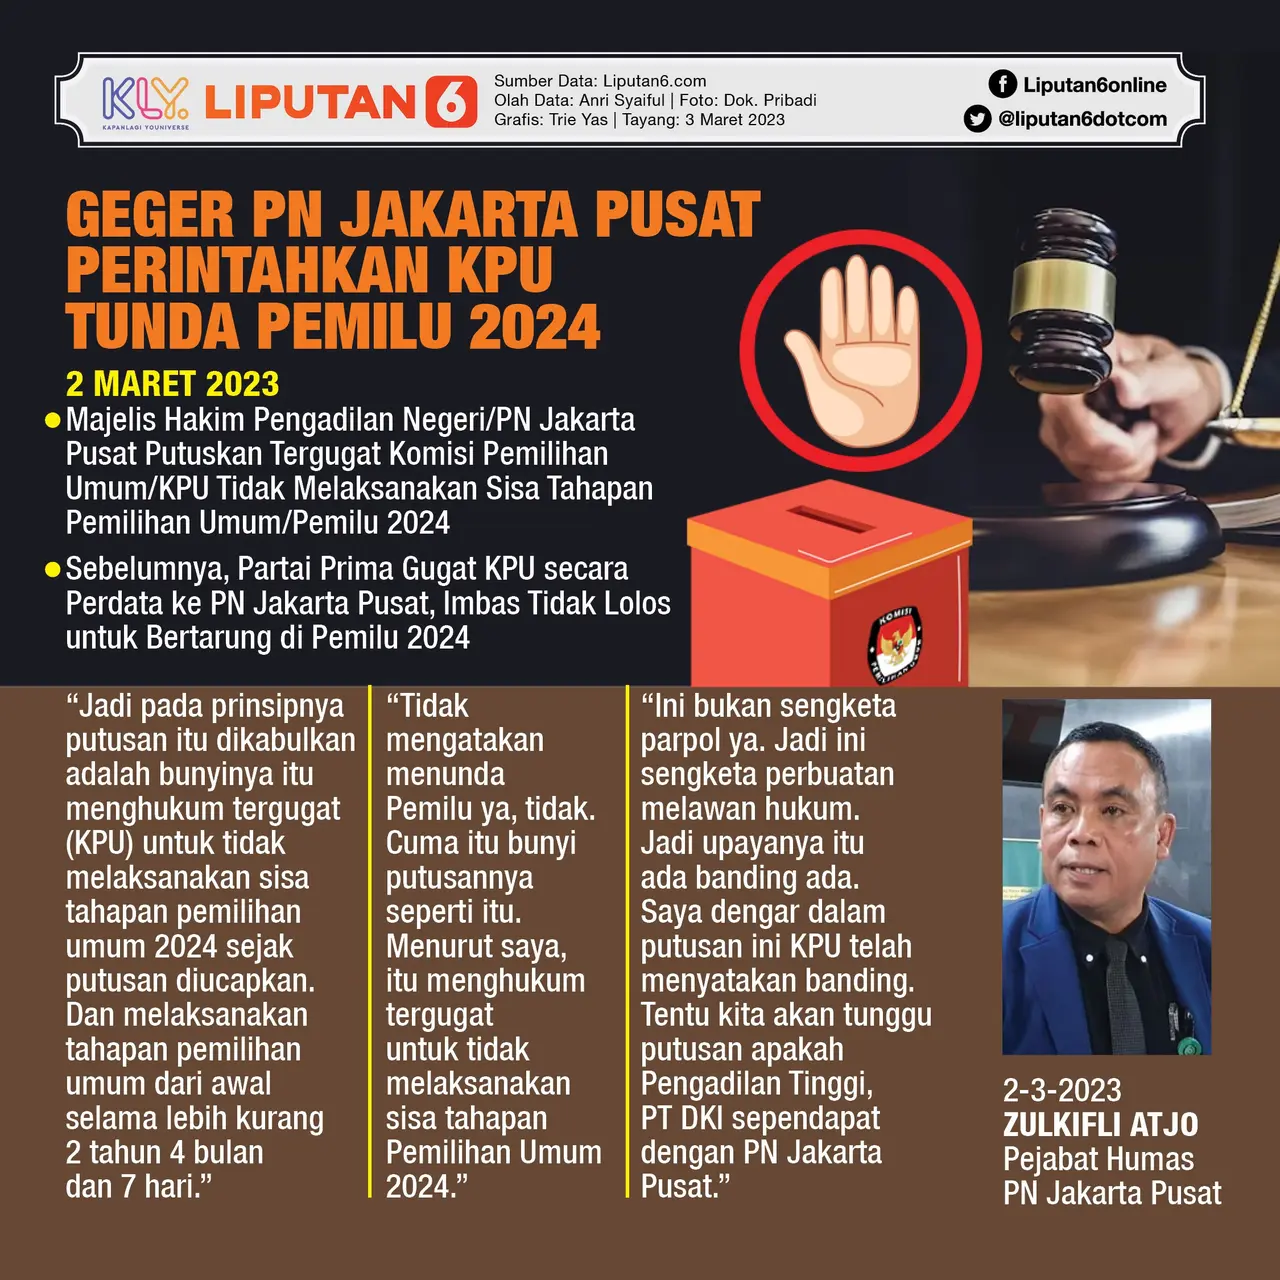 043051900_1677837715-Infografis_SQ_Geger_PN_Jakarta_Pusat_Perintahkan_KPU_Tunda_Pemilu_2024.jpg